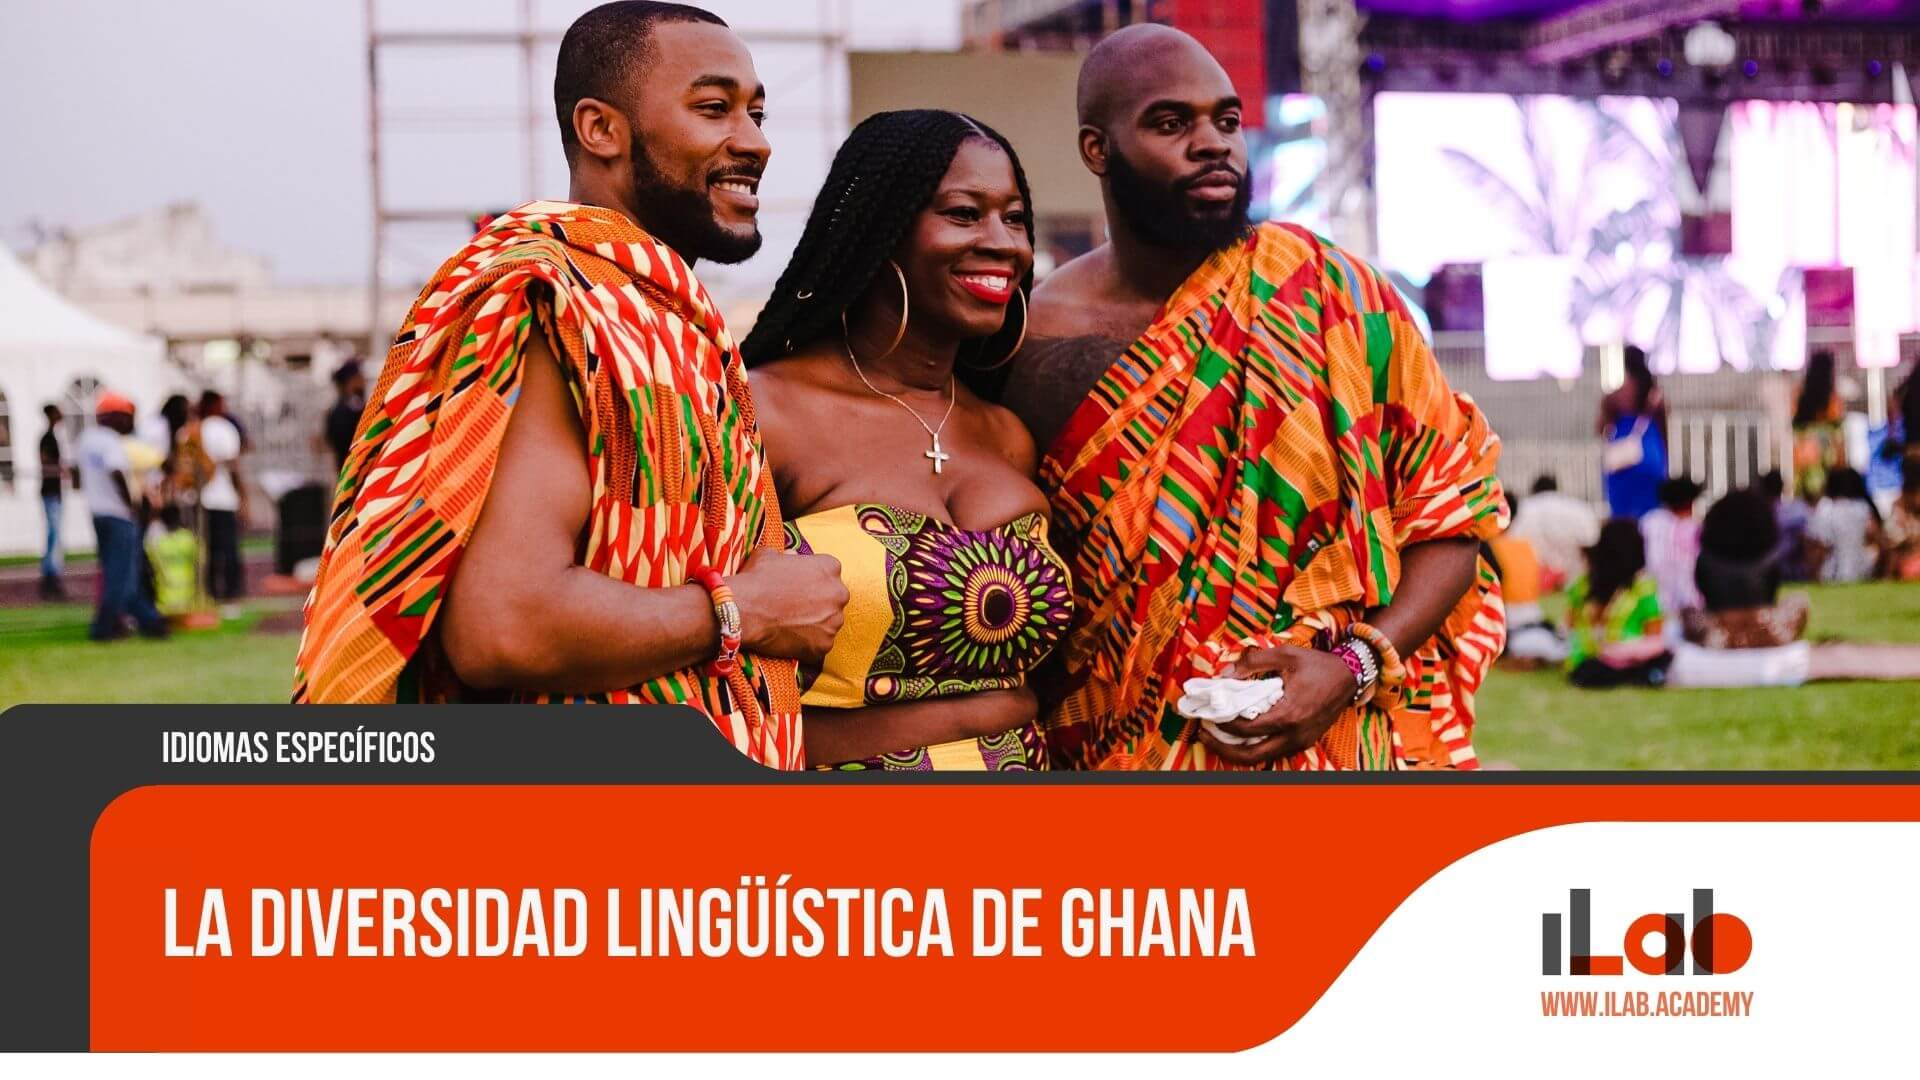 La diversidad lingüística de Ghana